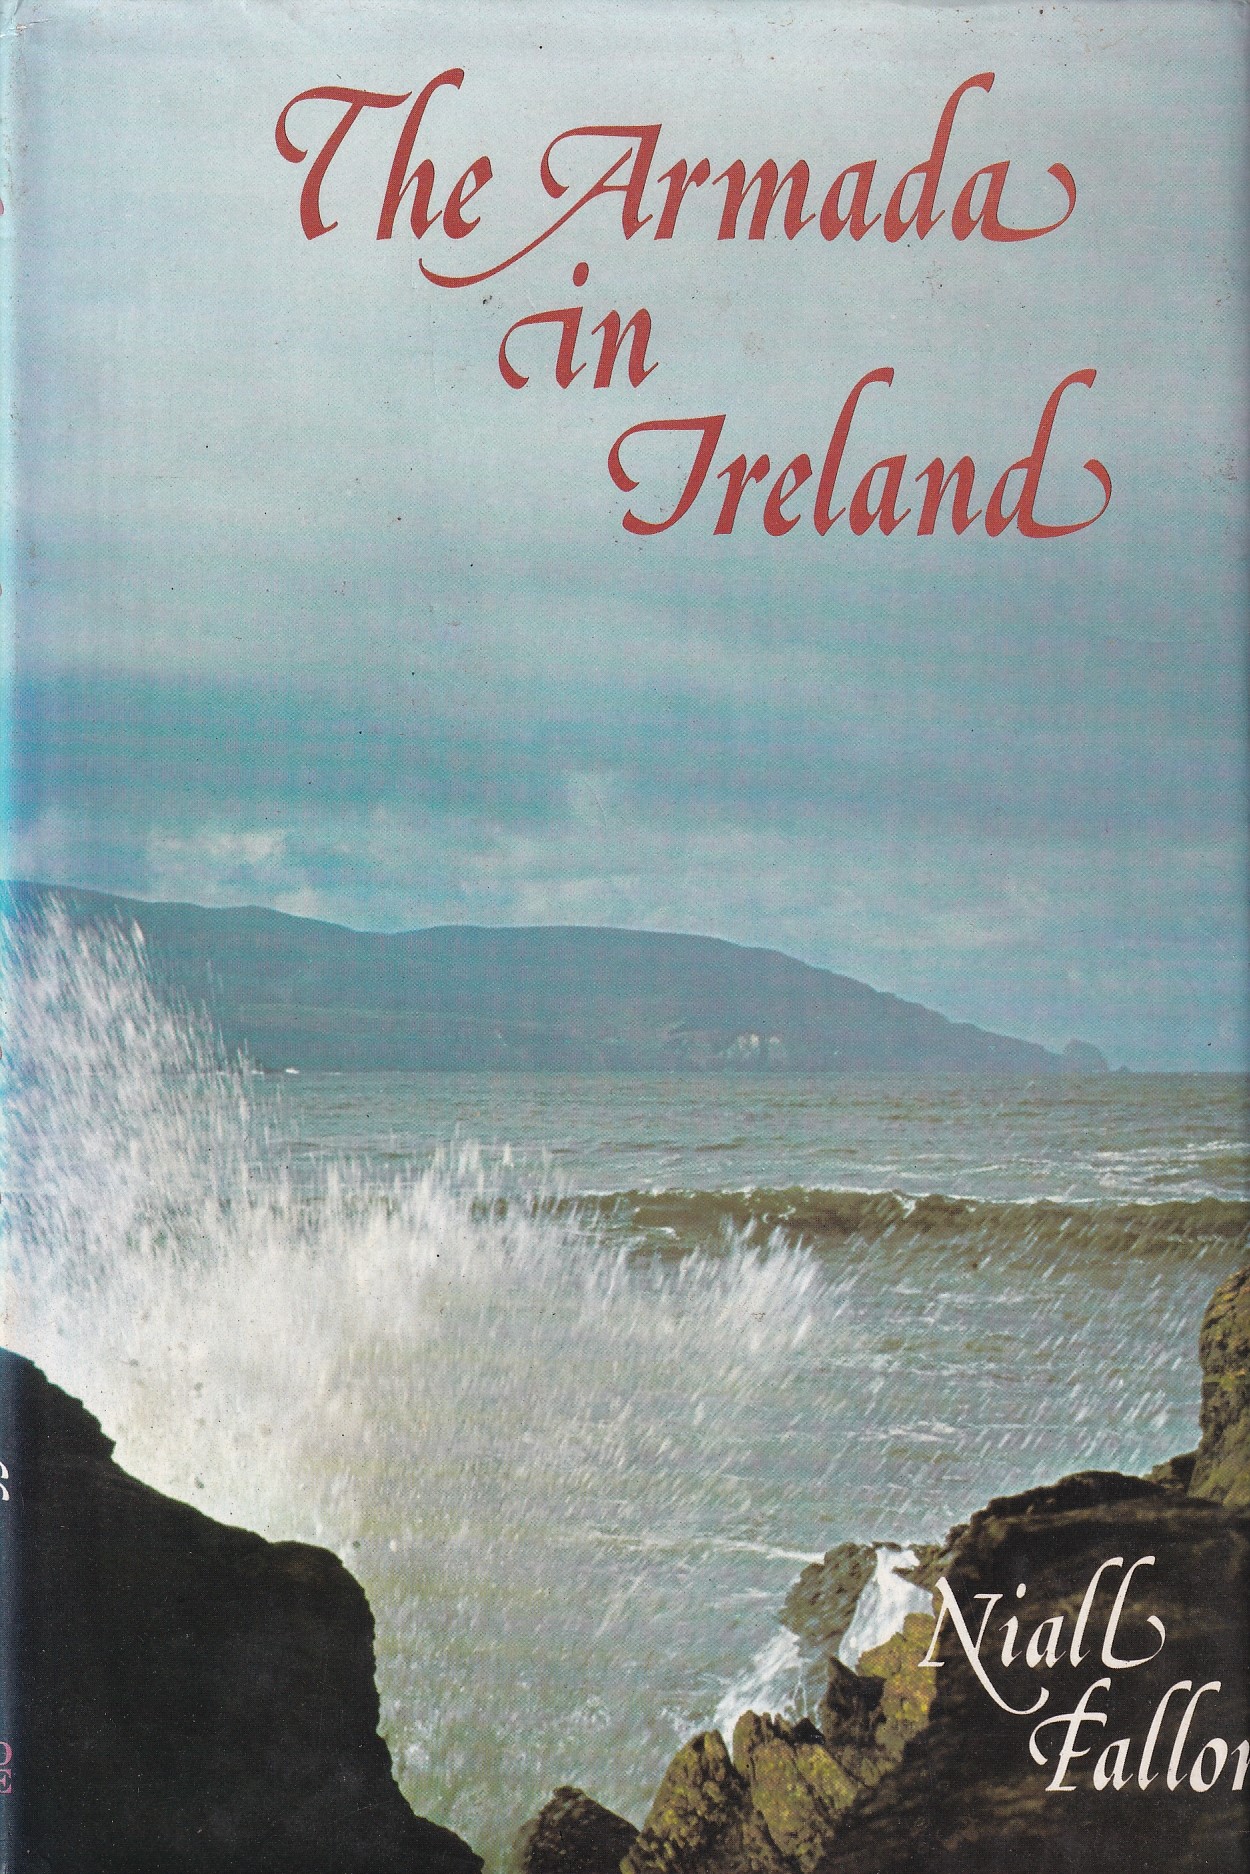 The Armada in Ireland by Niall Fallon